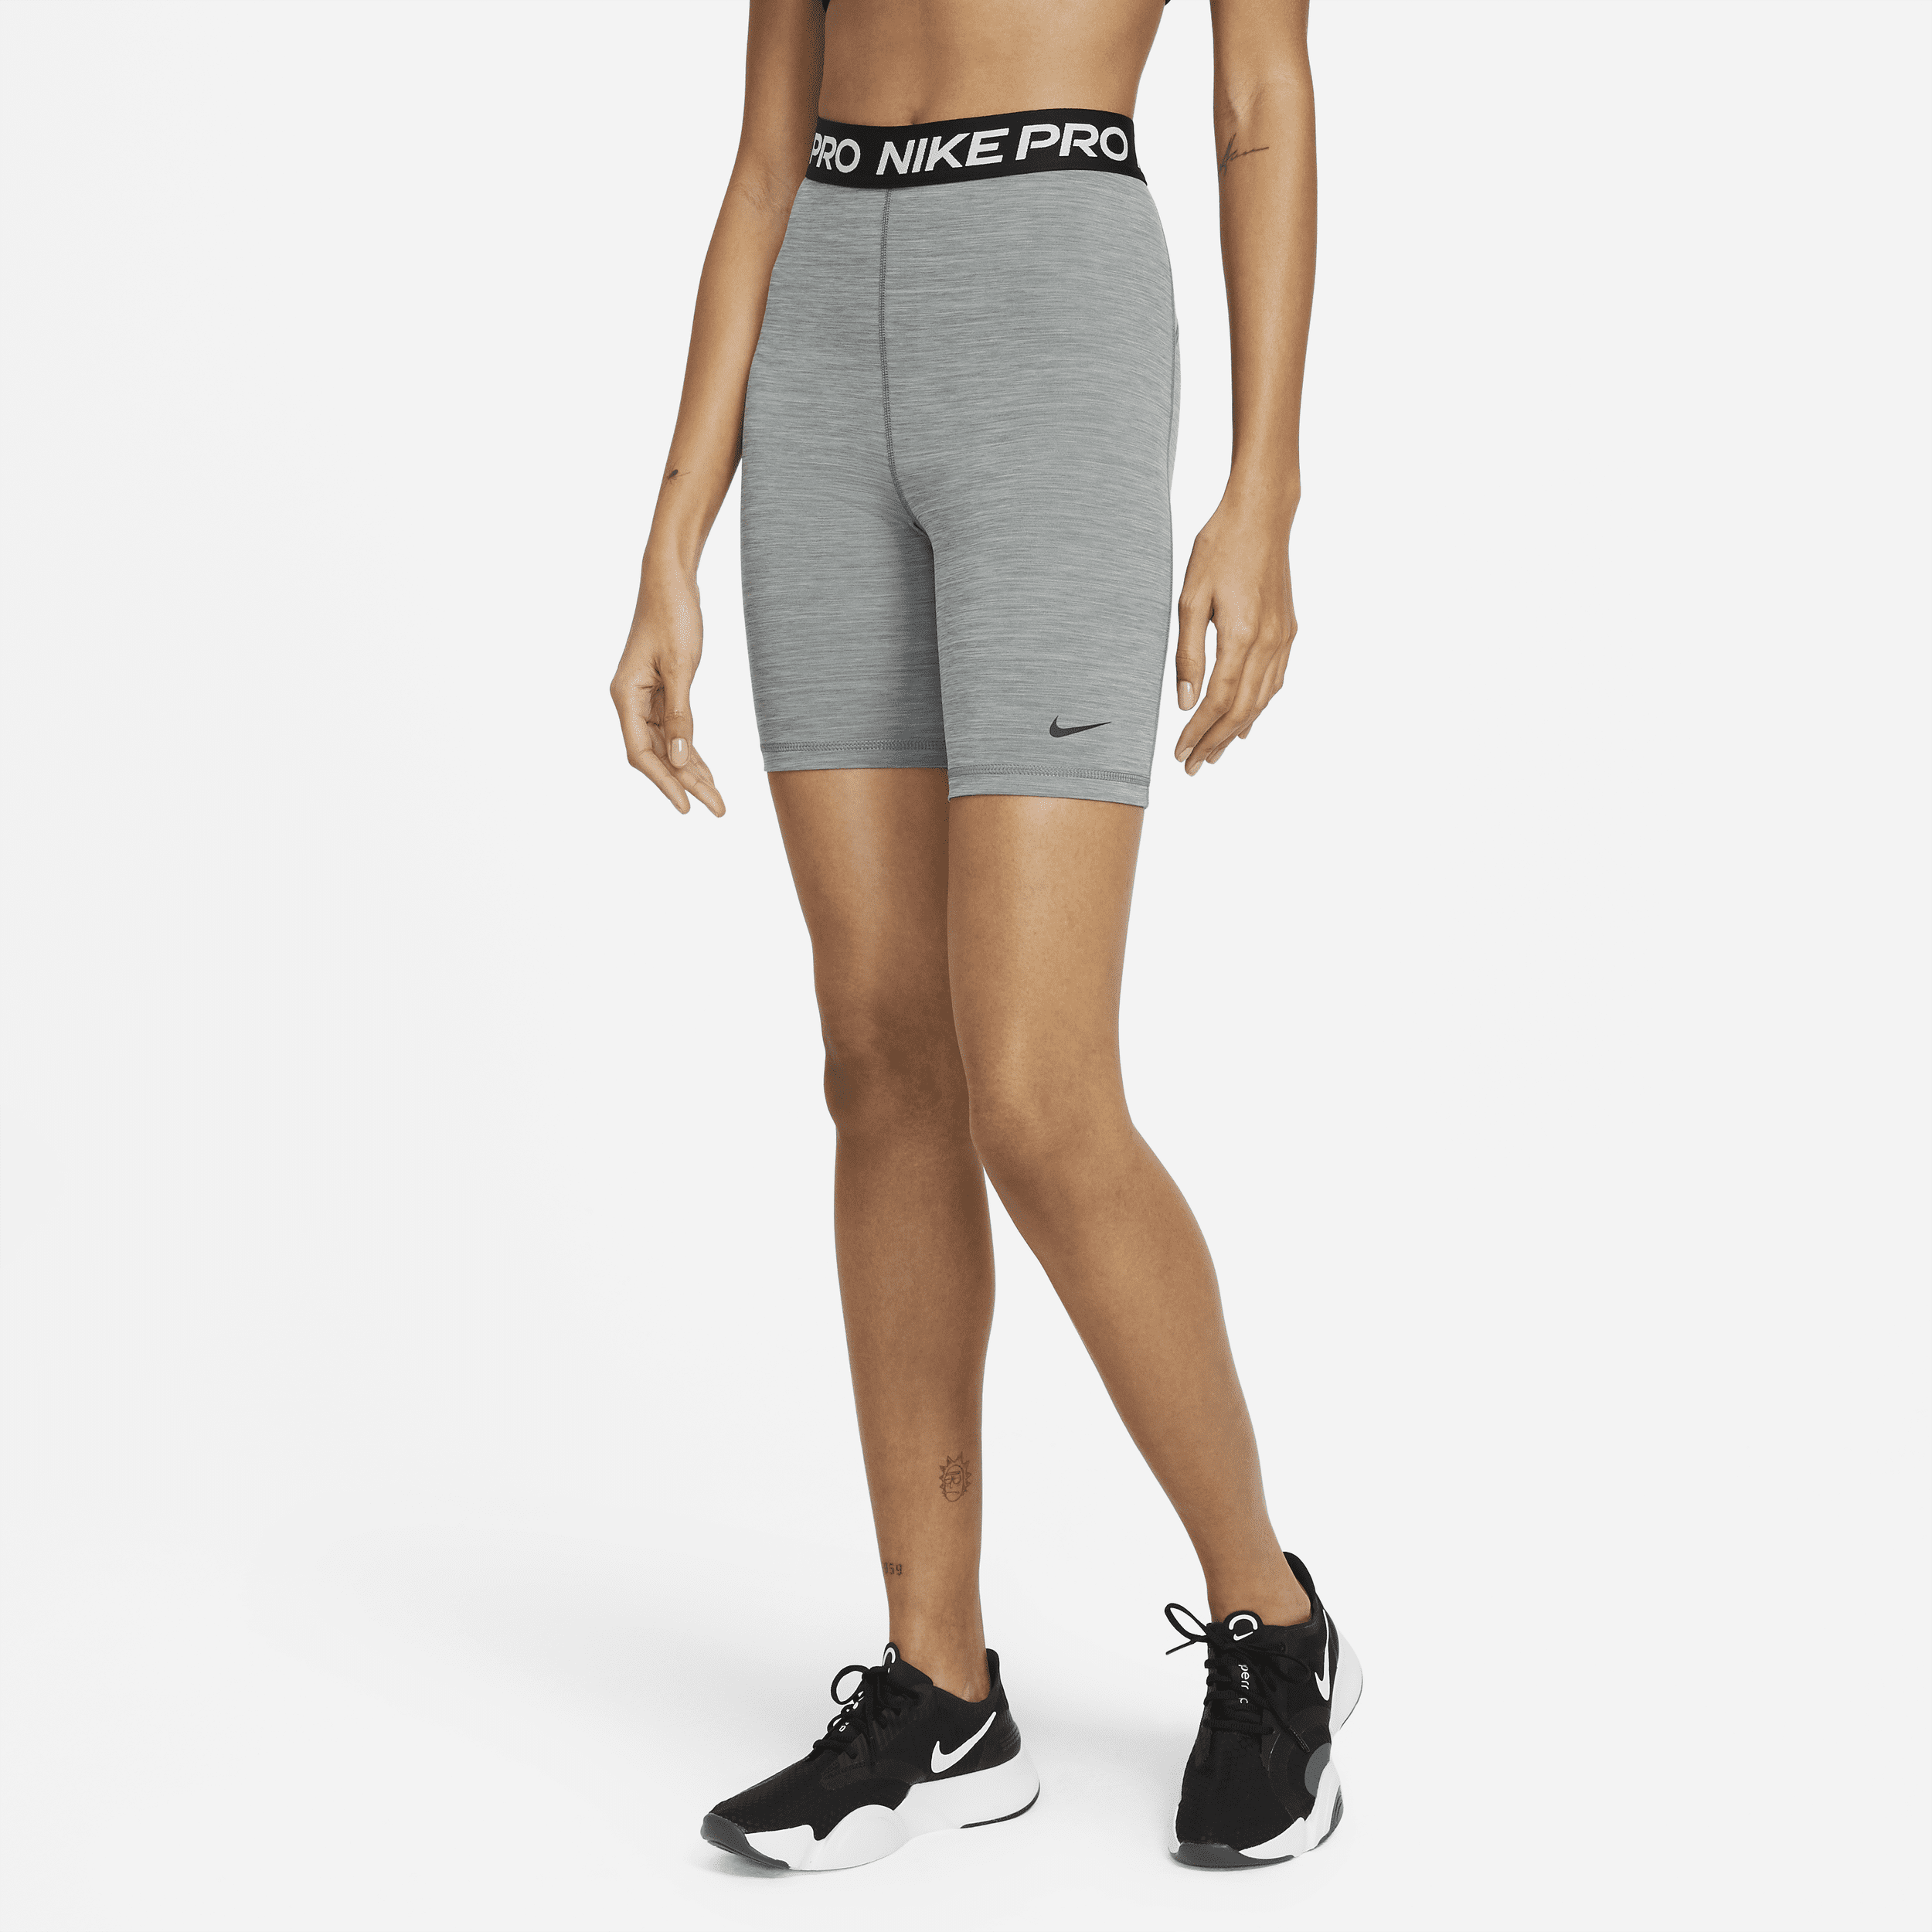 Shorts 18 cm a vita alta Nike Pro 365 – Donna - Grigio